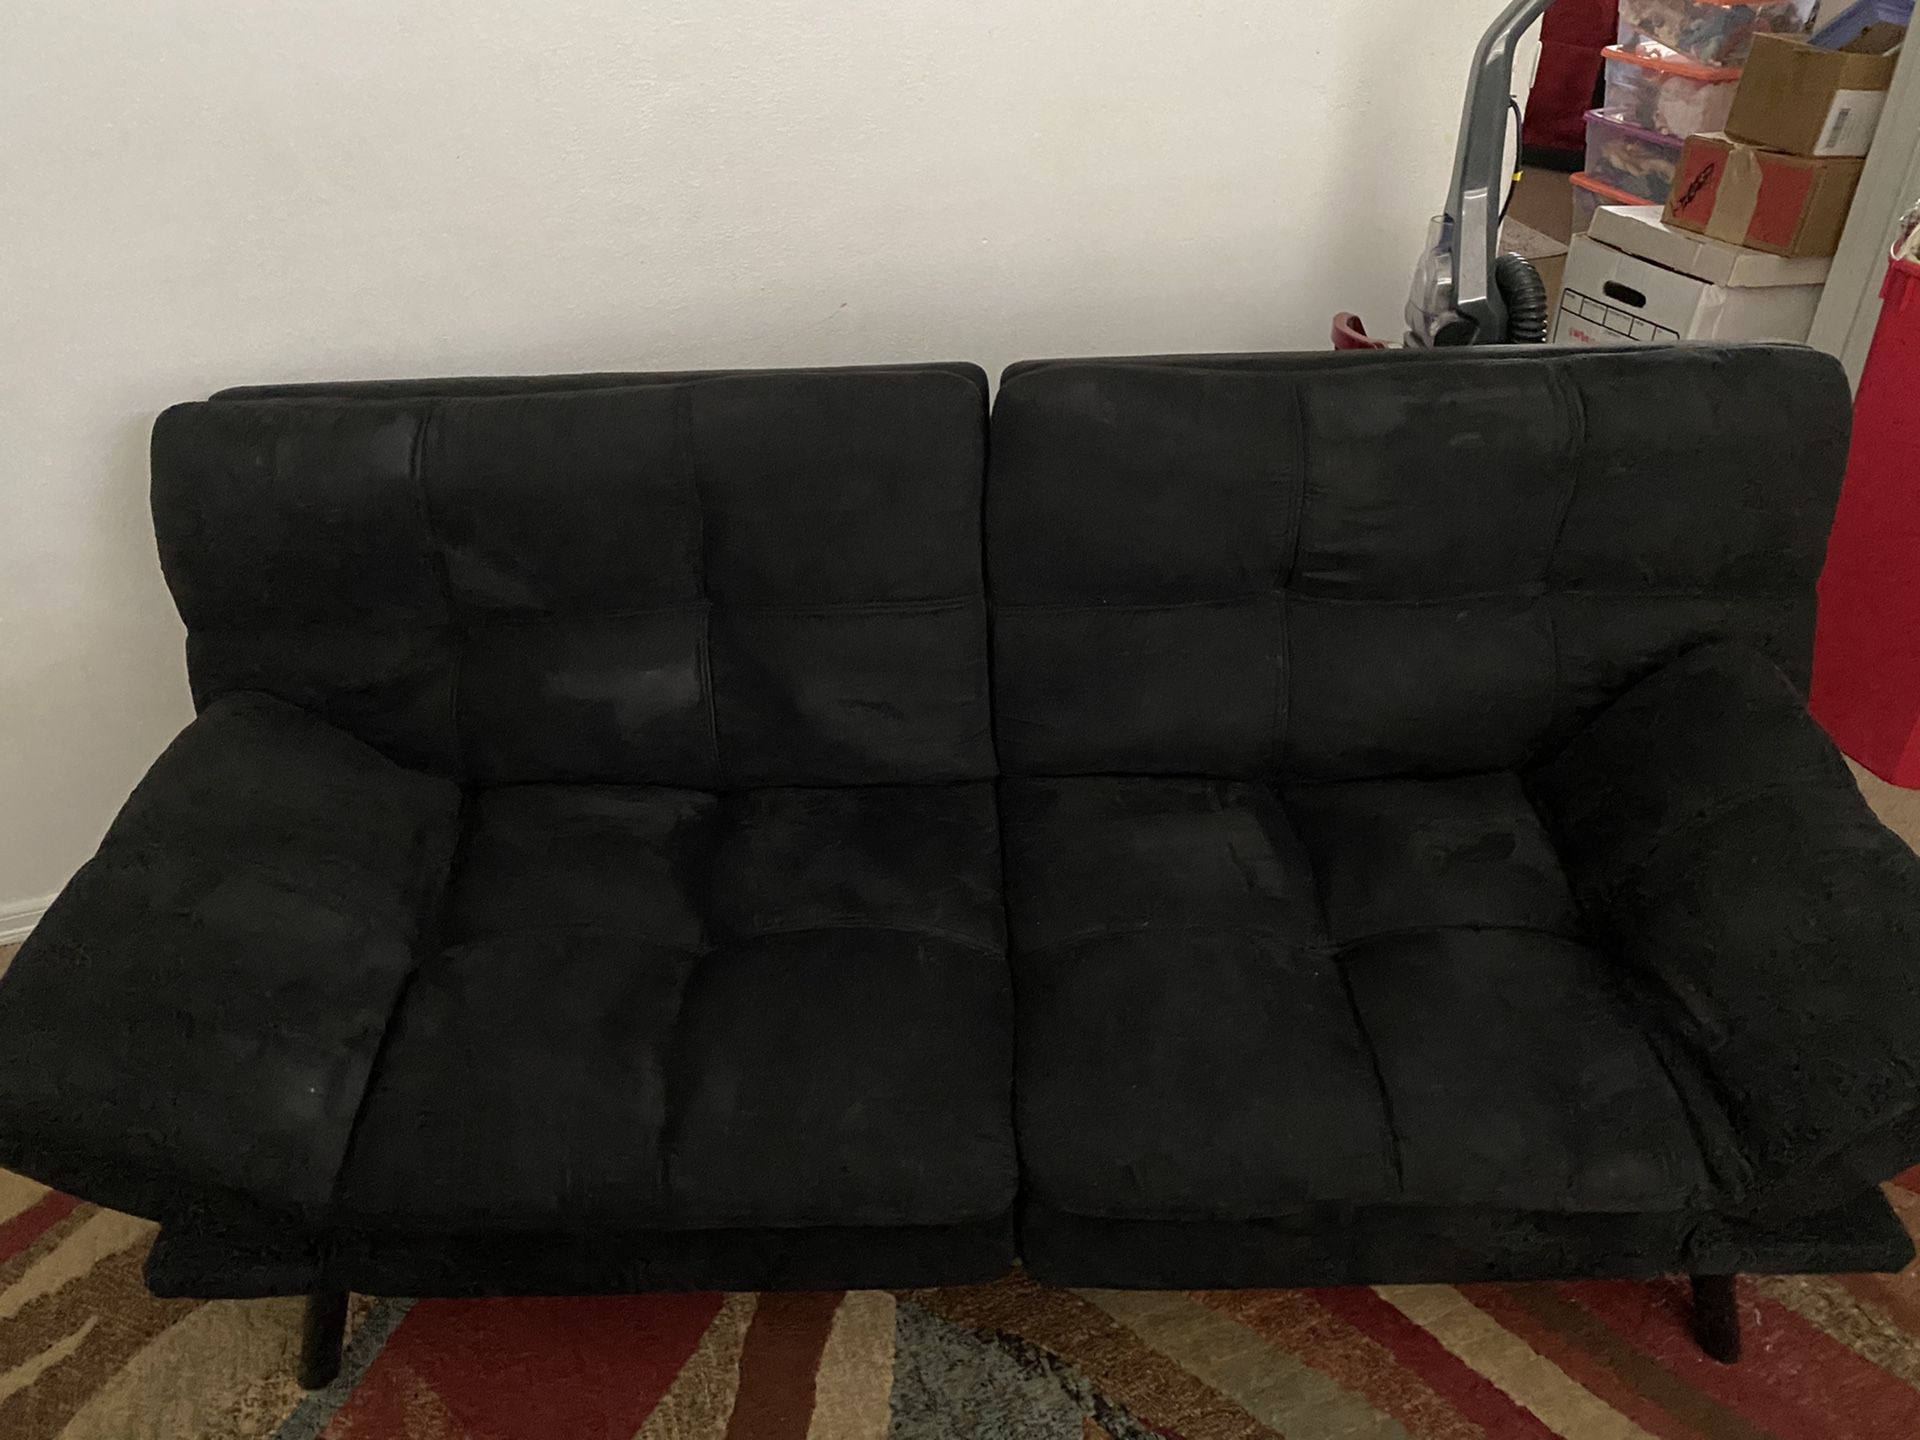 Dark colored futon